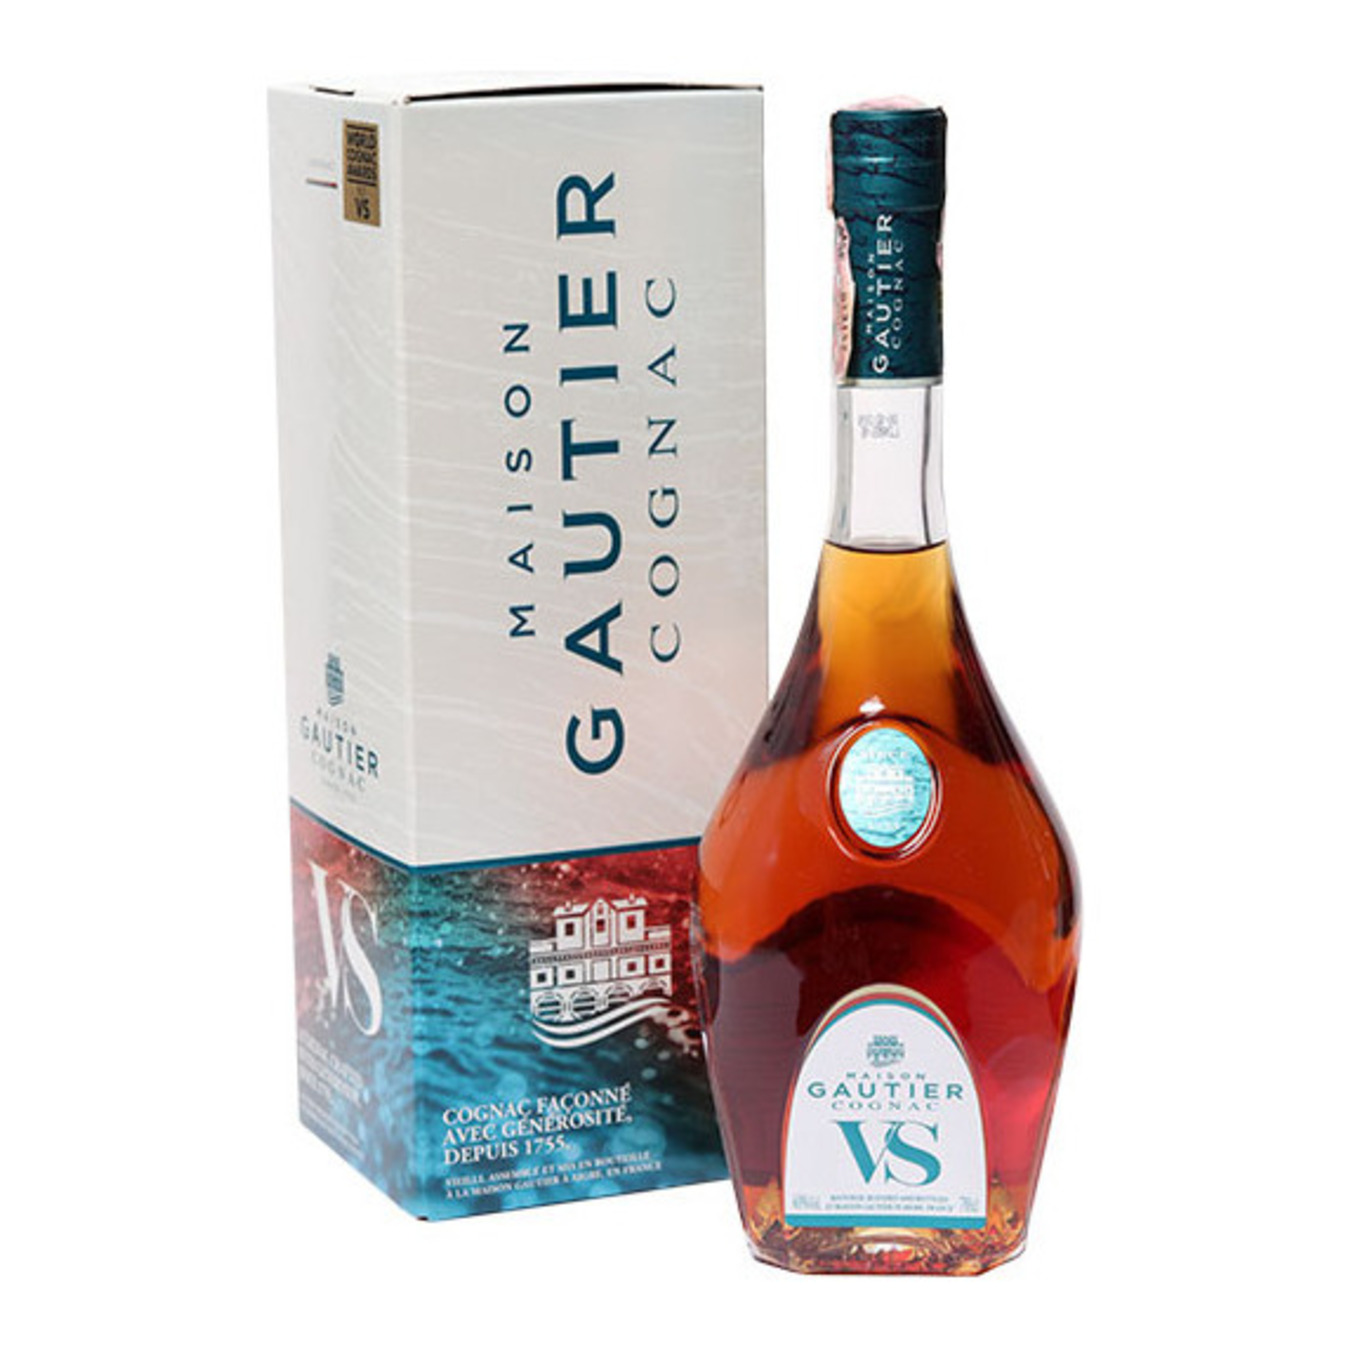 Maison Gautier V.S. Cognac 40% 0,7l